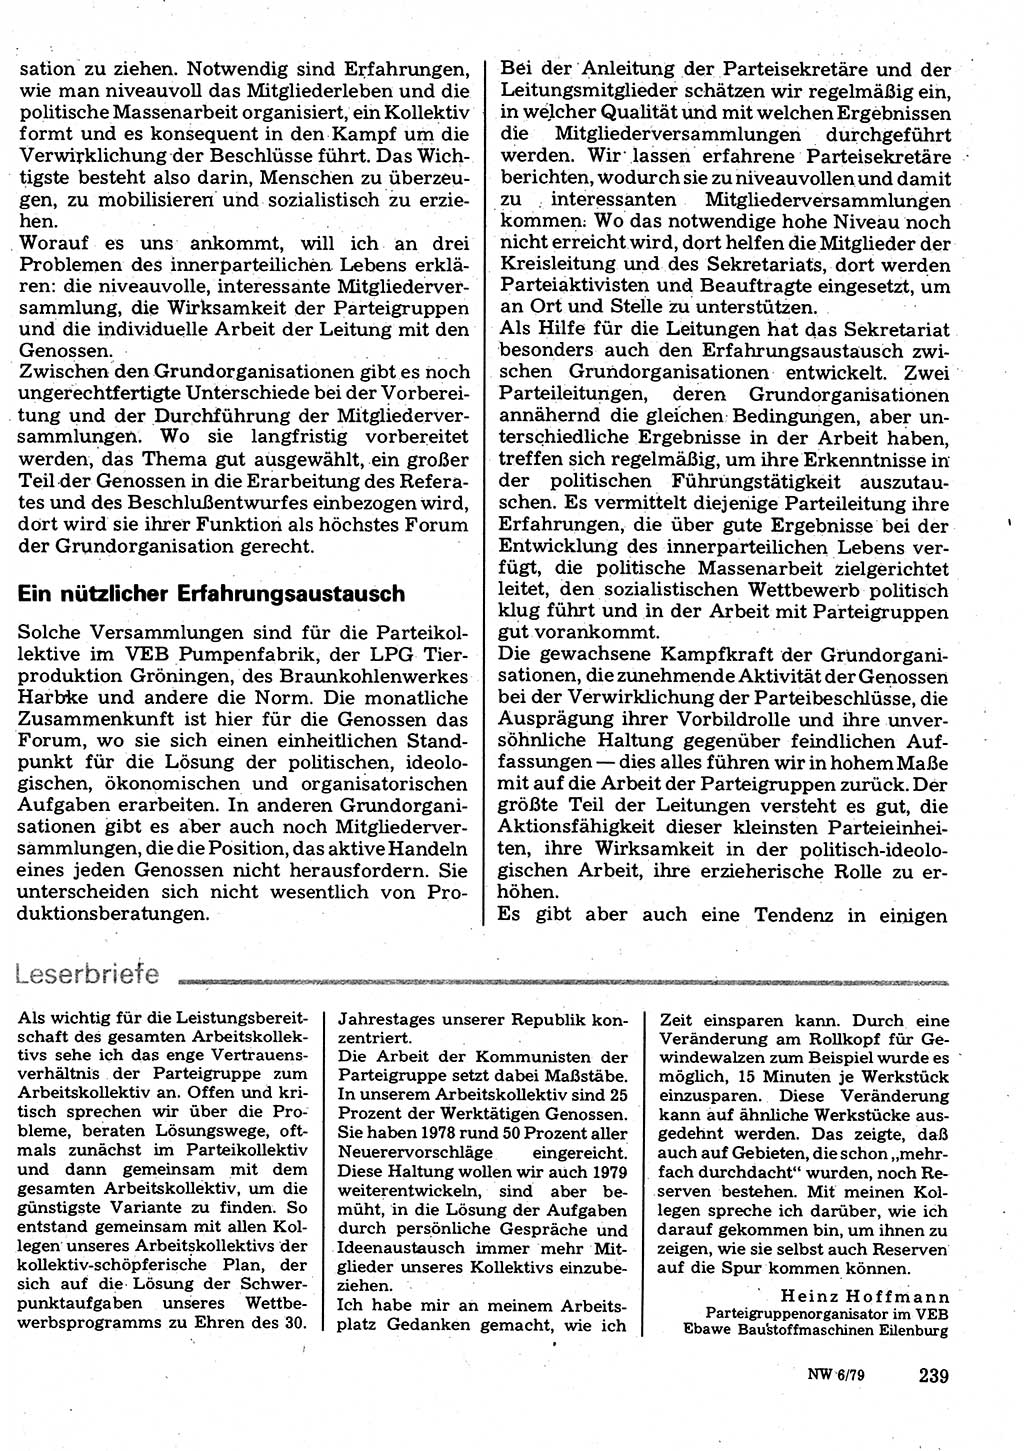 Neuer Weg (NW), Organ des Zentralkomitees (ZK) der SED (Sozialistische Einheitspartei Deutschlands) für Fragen des Parteilebens, 34. Jahrgang [Deutsche Demokratische Republik (DDR)] 1979, Seite 239 (NW ZK SED DDR 1979, S. 239)